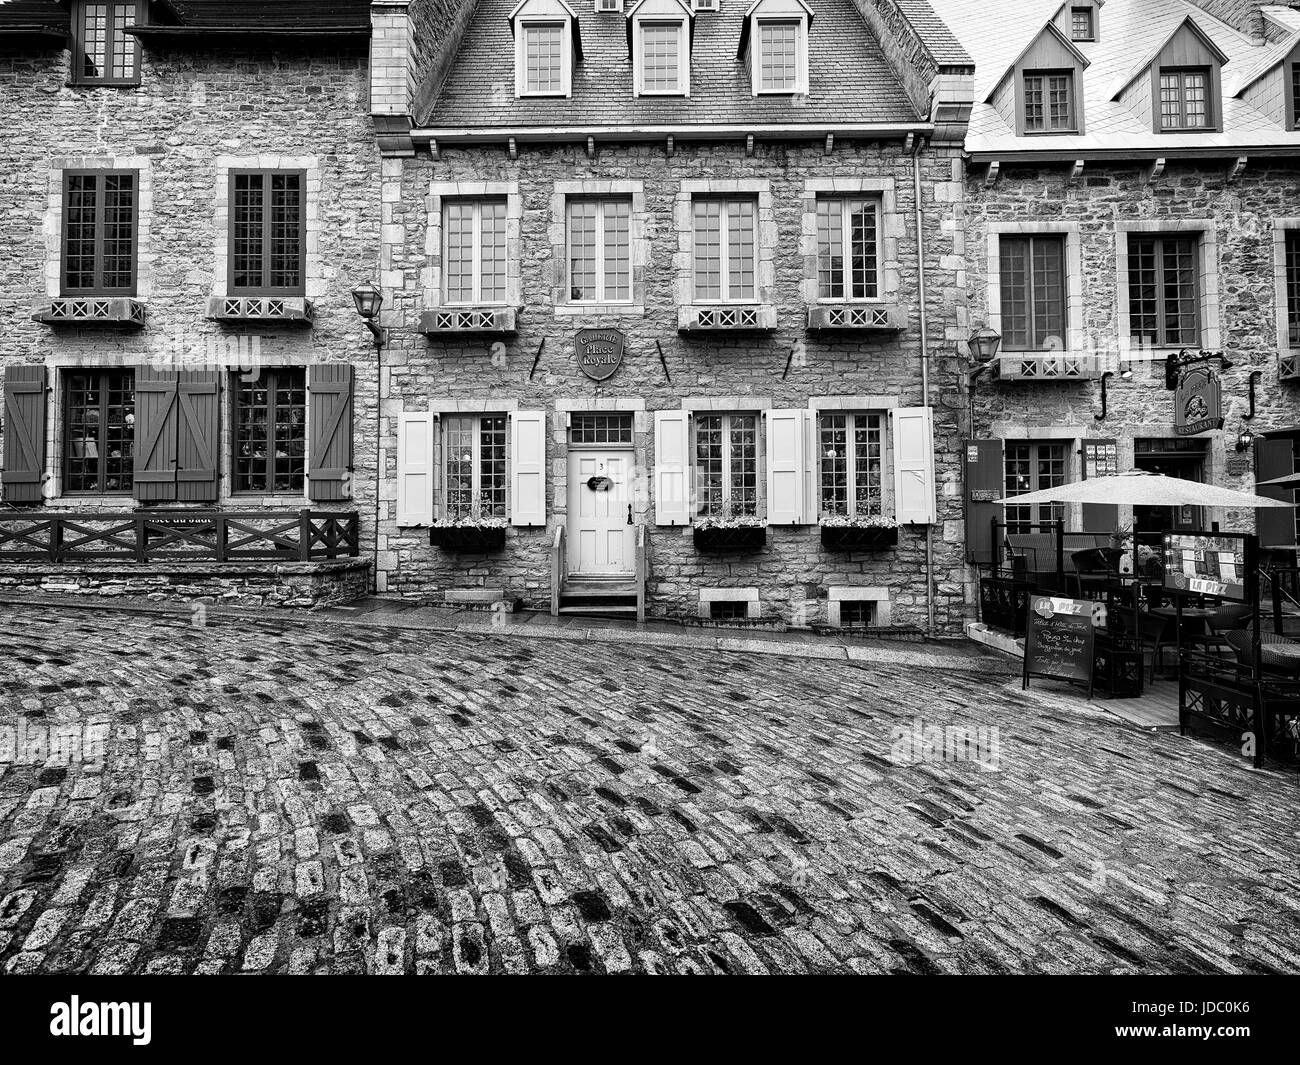 Führerschein und Drucke unter MaximImages.com - wunderschöne historische Architektur, Häuser im französischen Stil in der Altstadt von Québec. Stockfoto